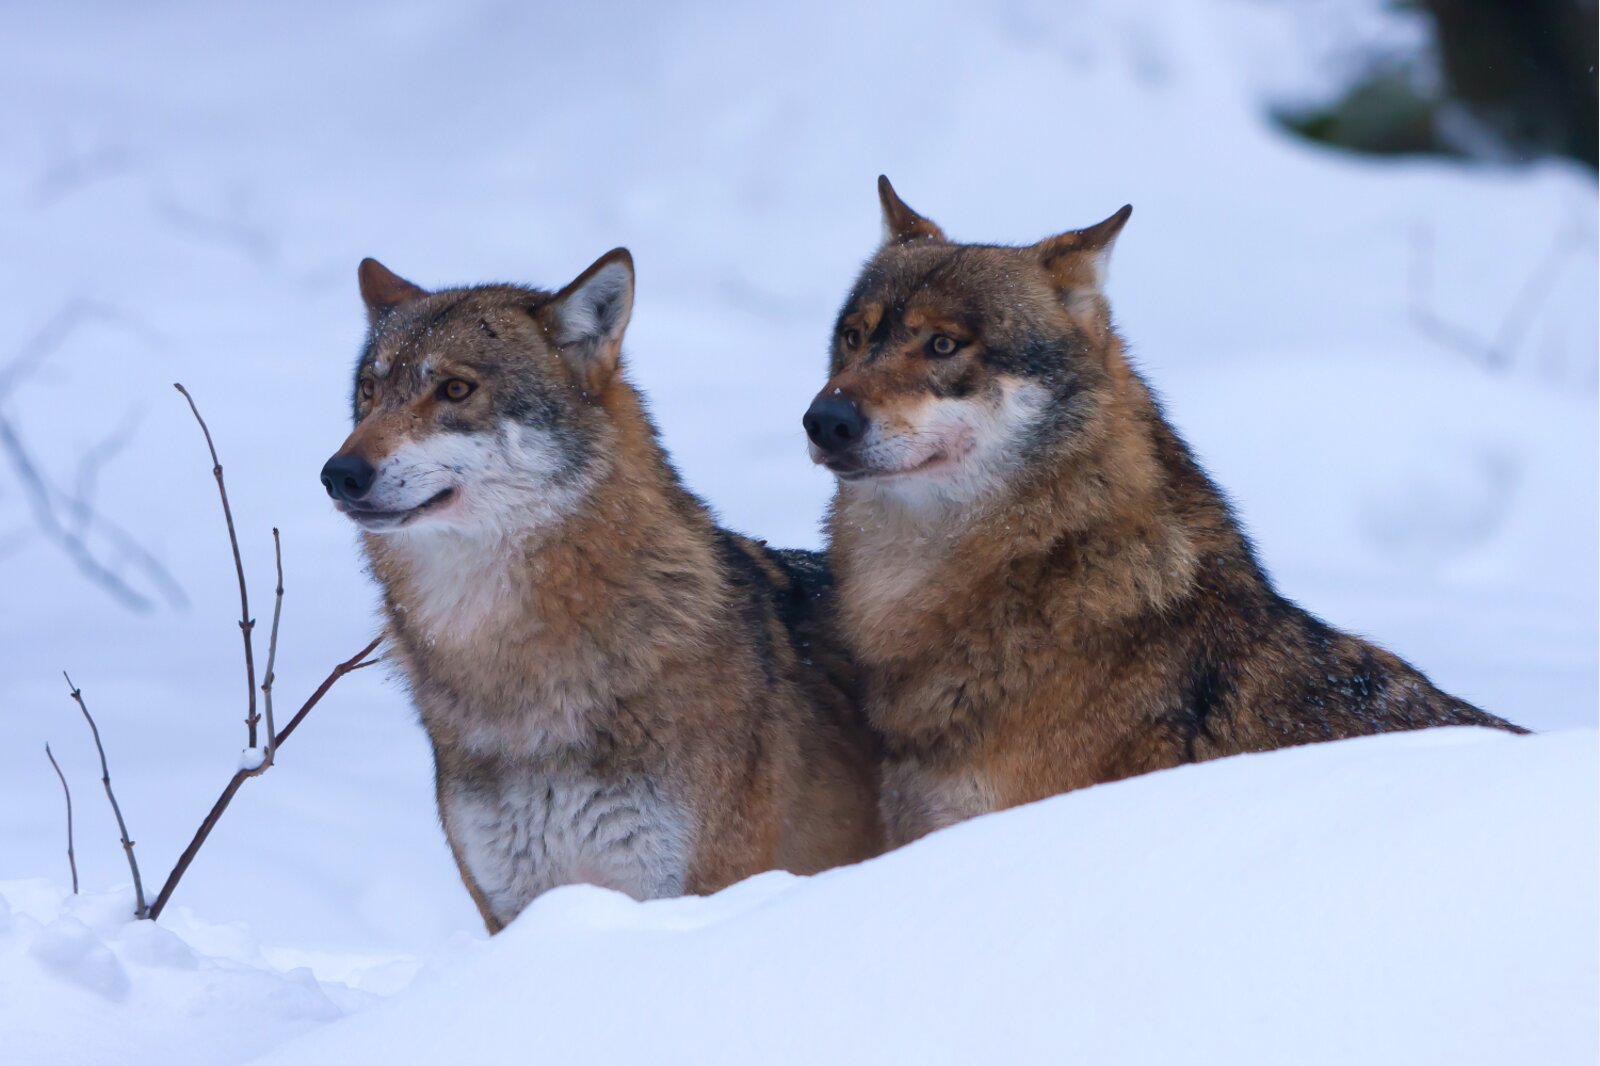 Noch kein Abschuss erlaubt: Die Wölfe in den Kantonen Graubünden und Wallis dürfen bis zu einem Urteil des BVGer nicht reguliert werden. (Bild: Keystone)